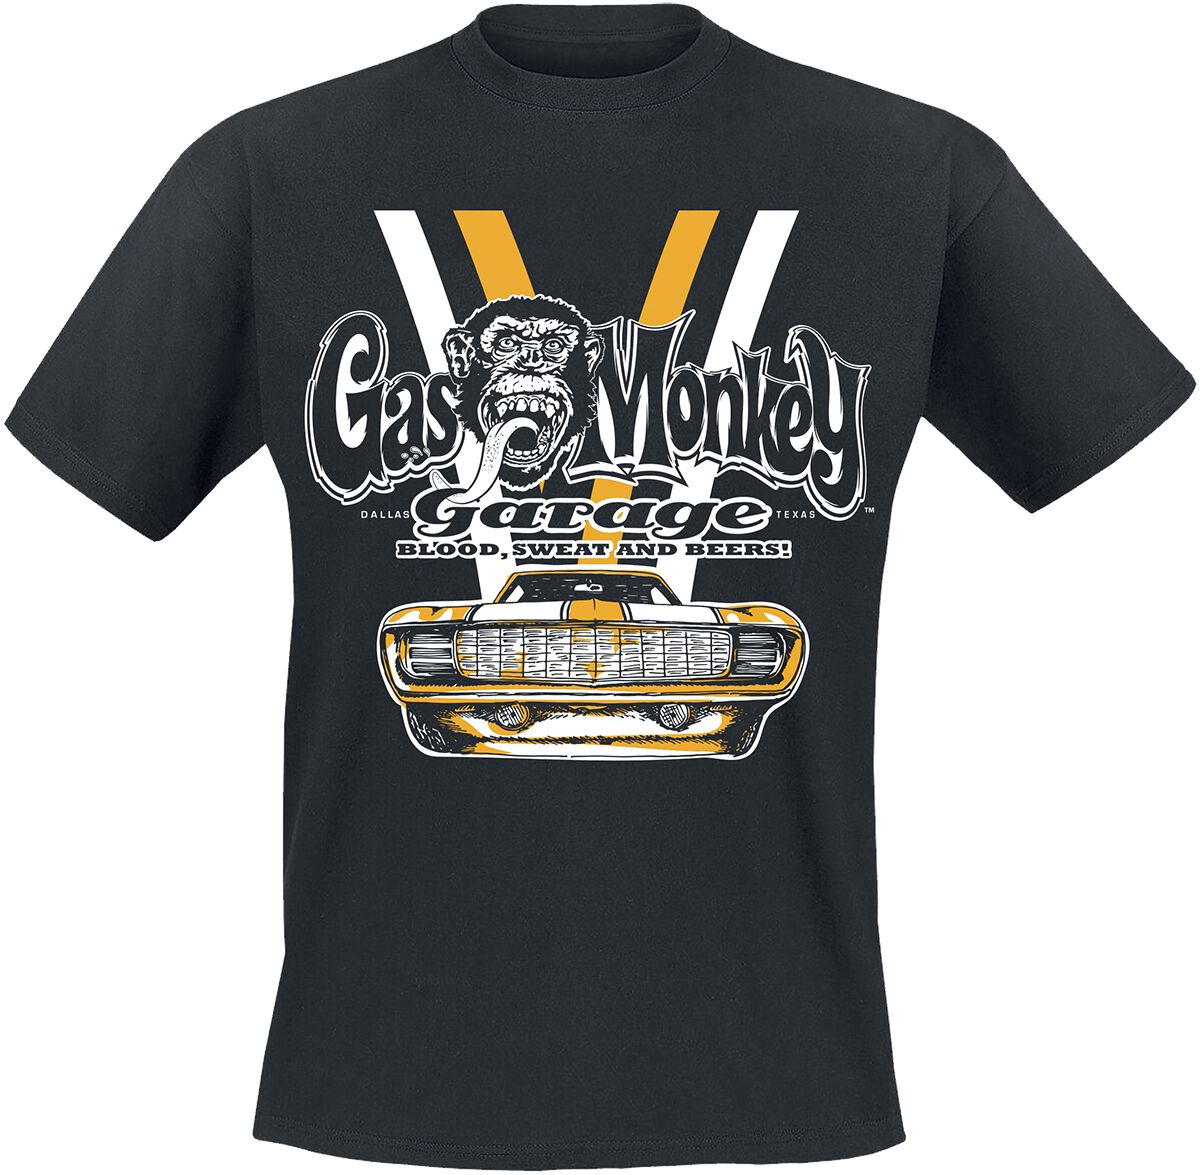 Gas Monkey Garage T-Shirt - Yellow And White Car - S bis XXL - für Männer - Größe M - schwarz  - Lizenzierter Fanartikel